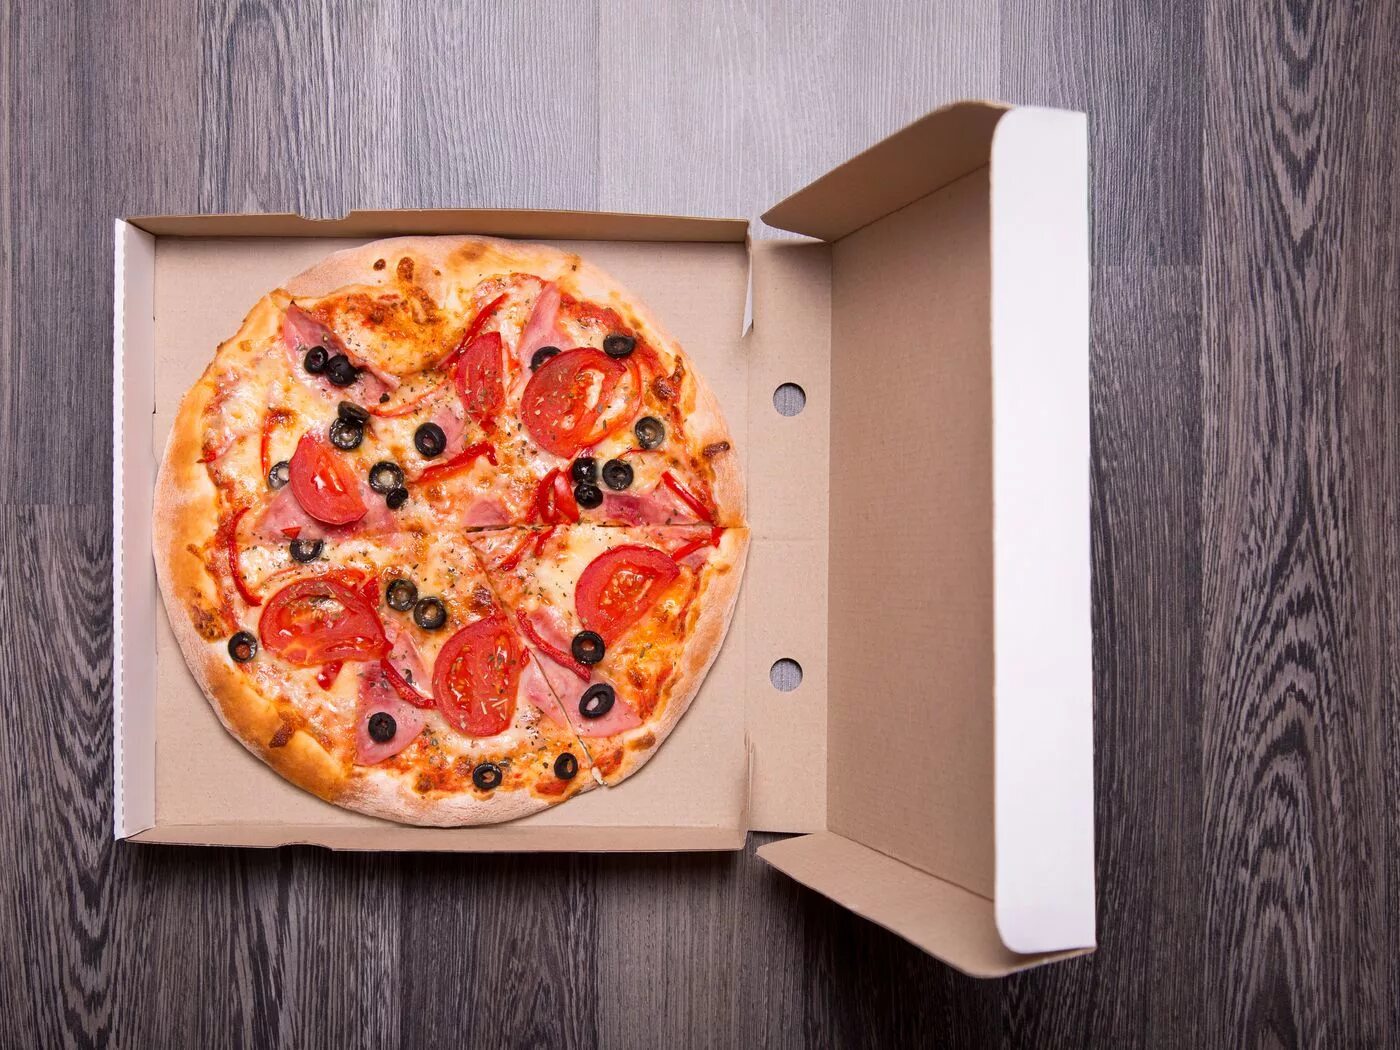 Пицца в коробке сверху. Коробка для пиццы. Пицца в коробке вид сверху. Итальянская пицца в коробке. Почему пицца круглая а коробка